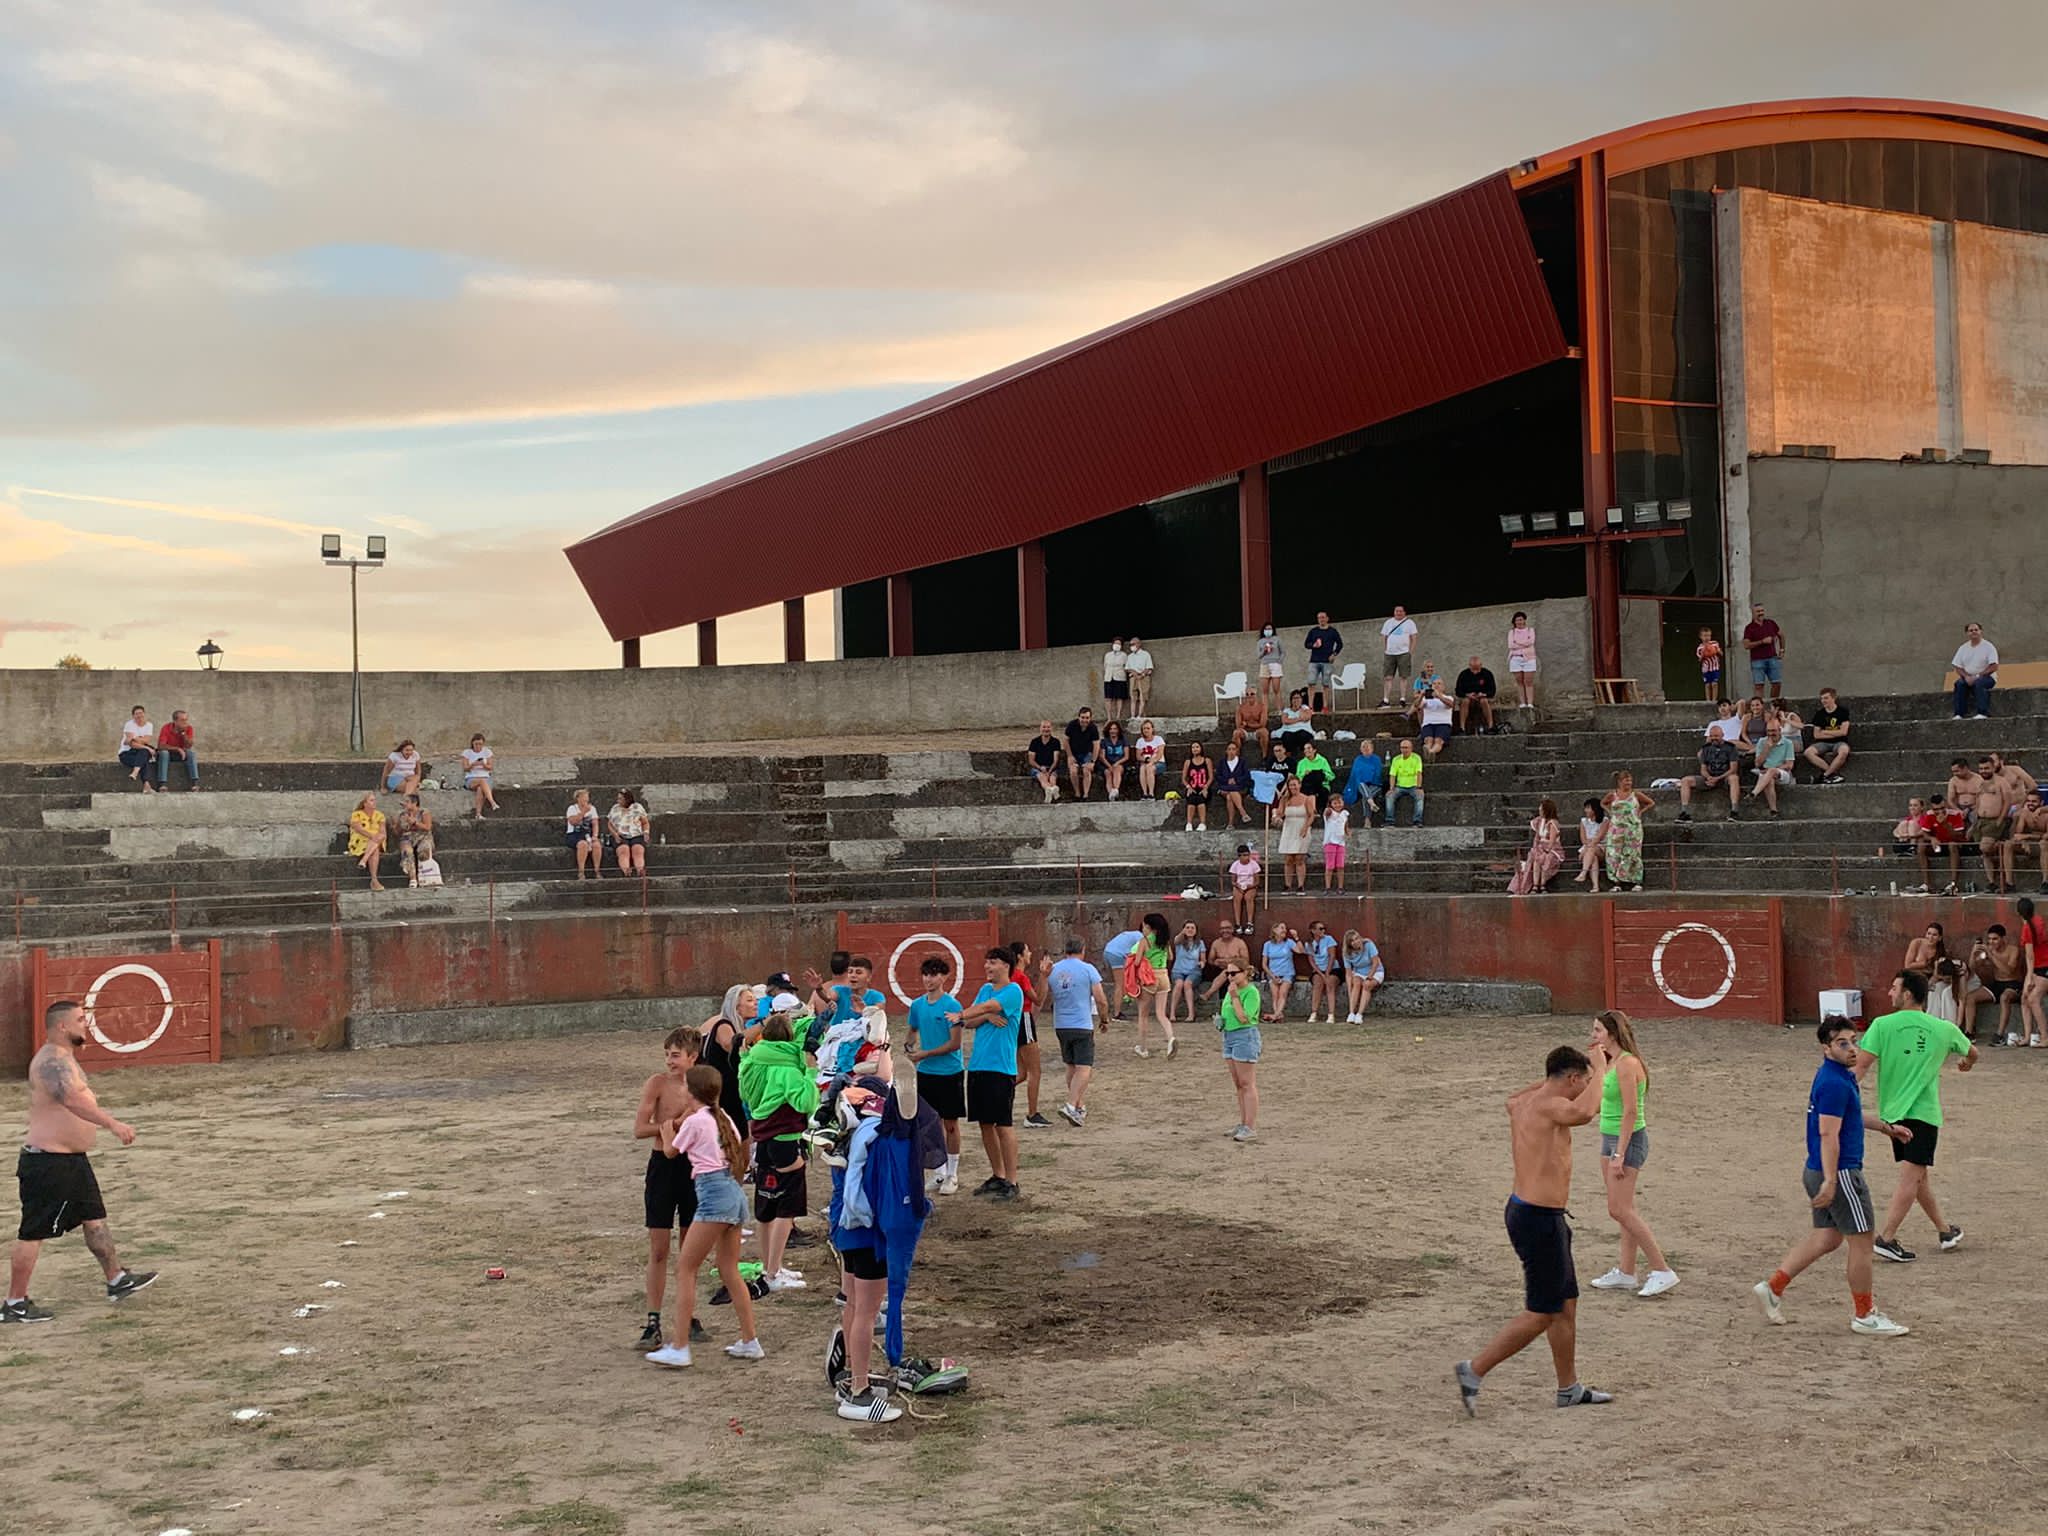 Torneo de fútbol y Gran Gymcana en Pereña 